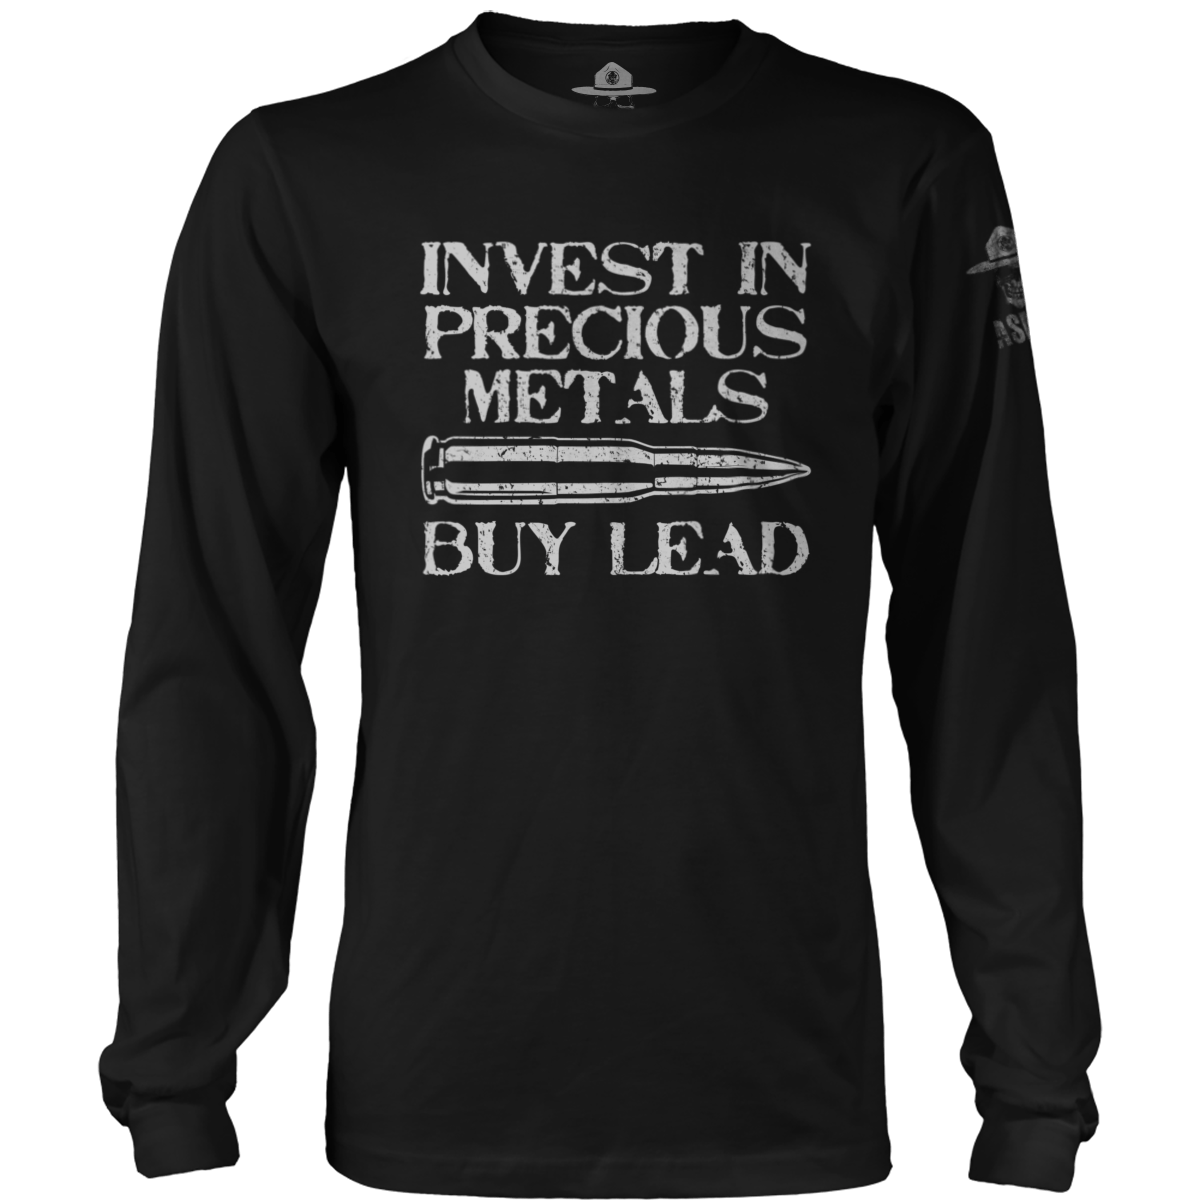 Buy Lead